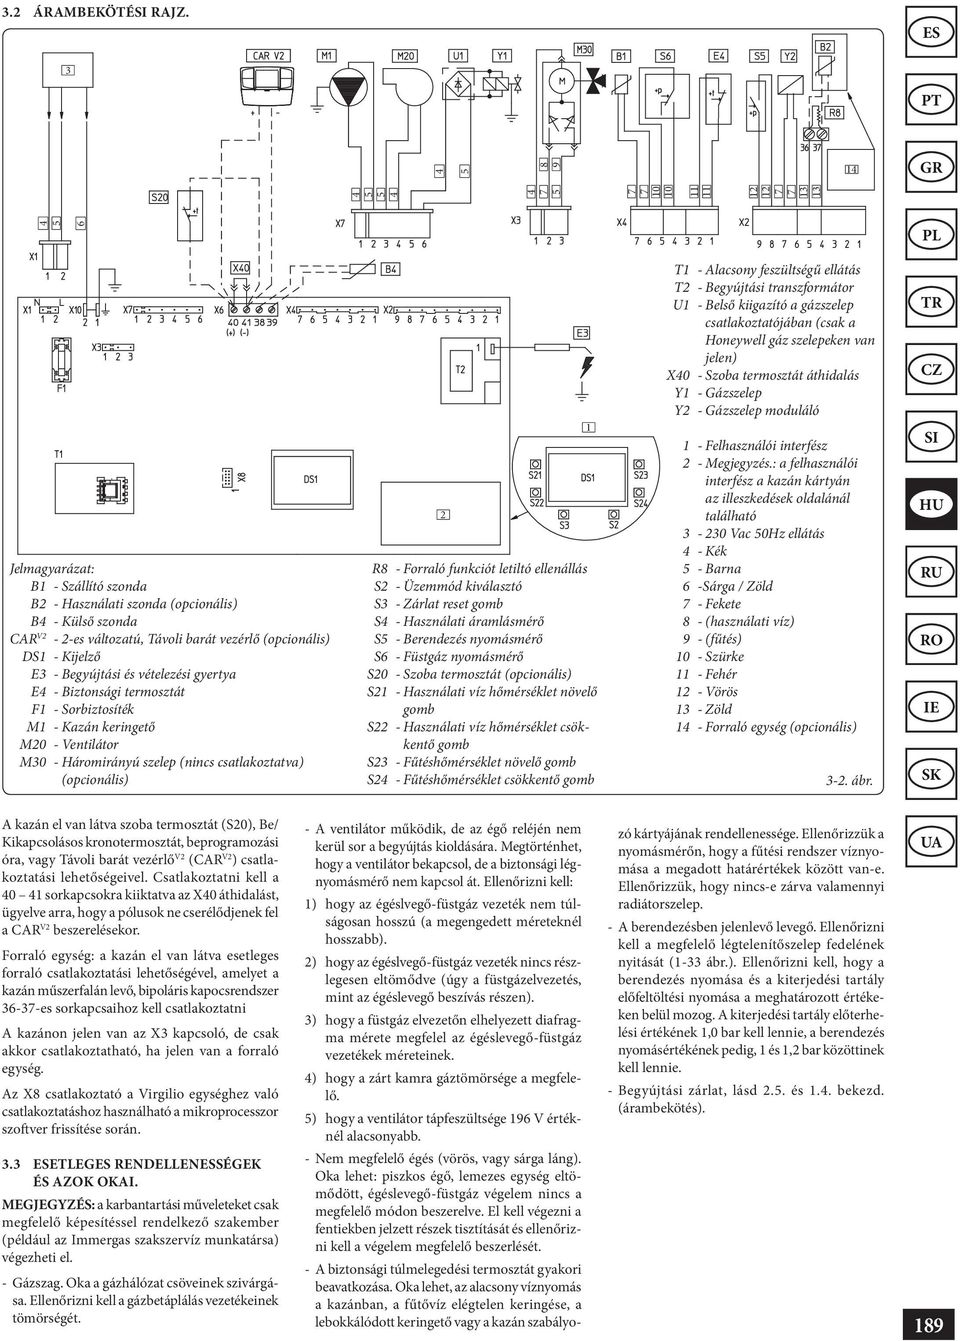 MINI Eolo X 24 3 E. Használati utasítás és figyelmeztetések - PDF Ingyenes  letöltés